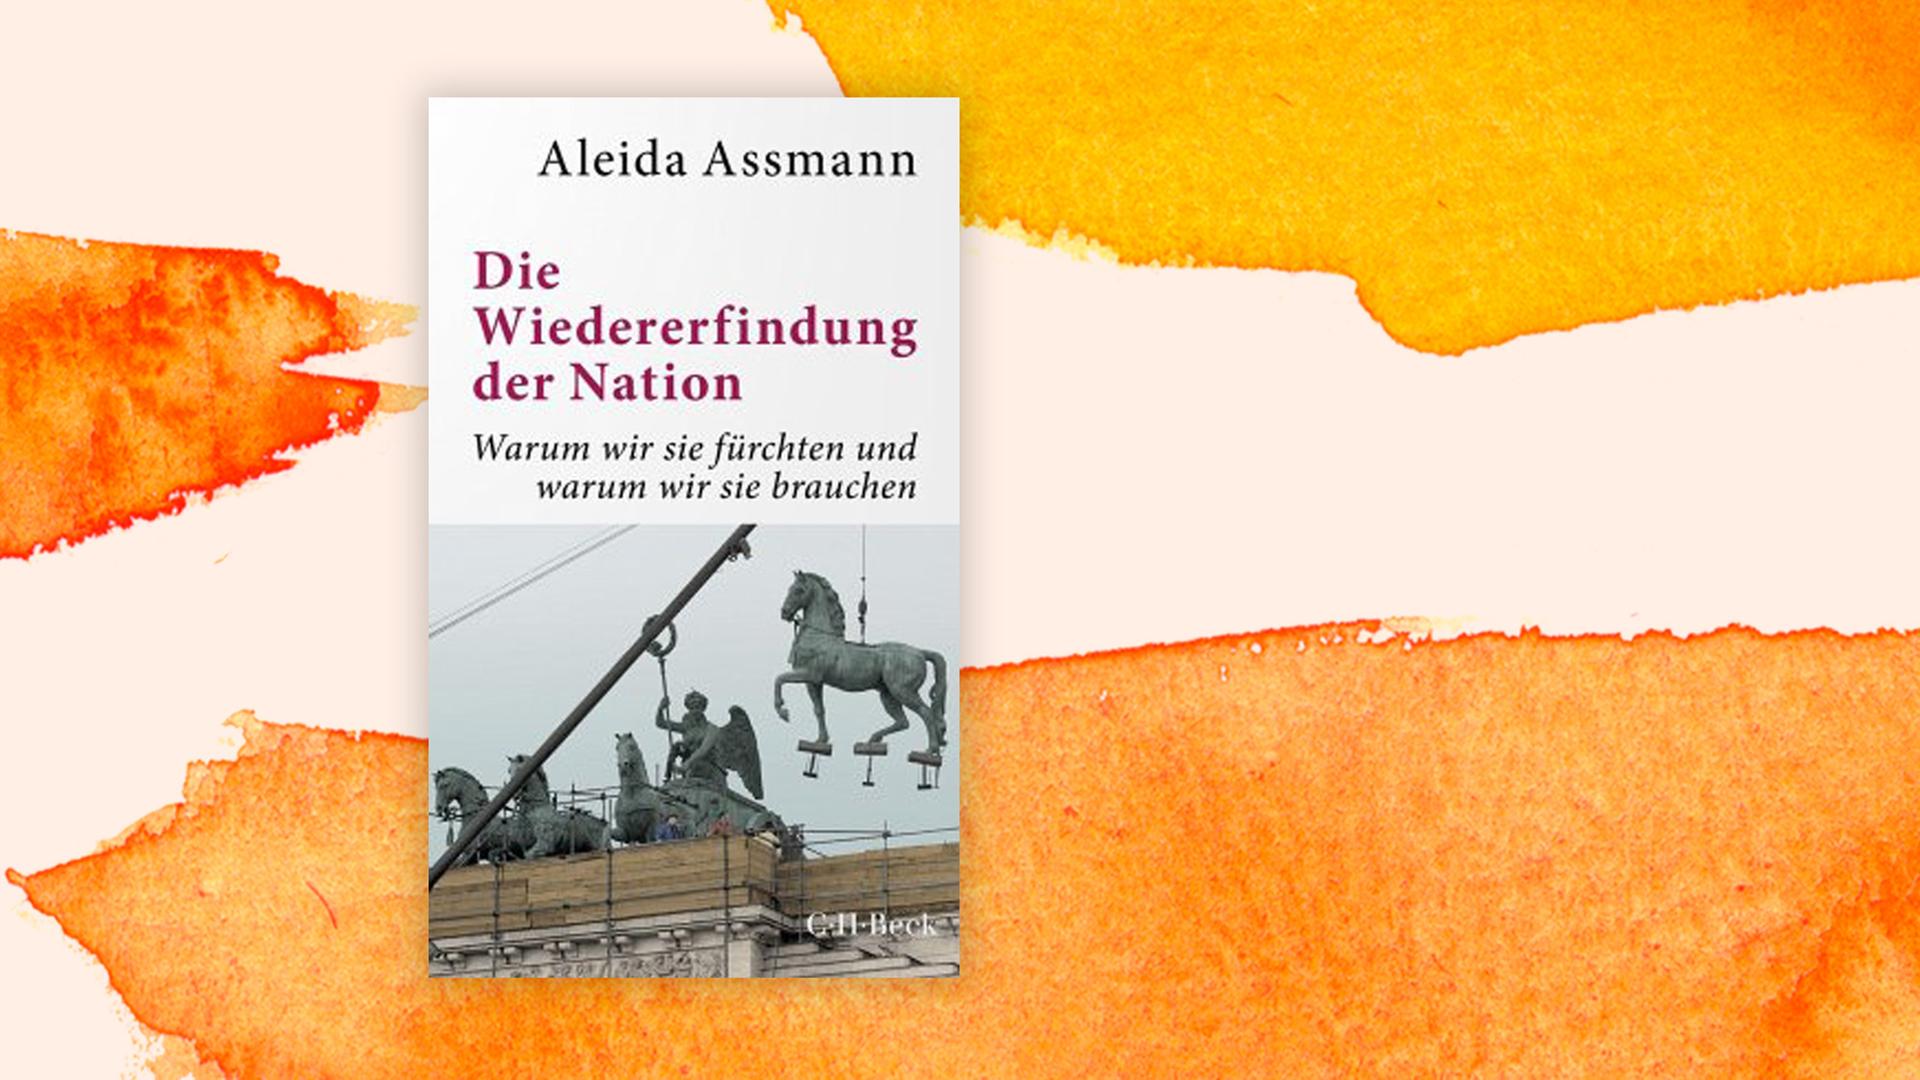 Buchcover: "Die Wiedererfindung der Nation" von Aleida Assmann